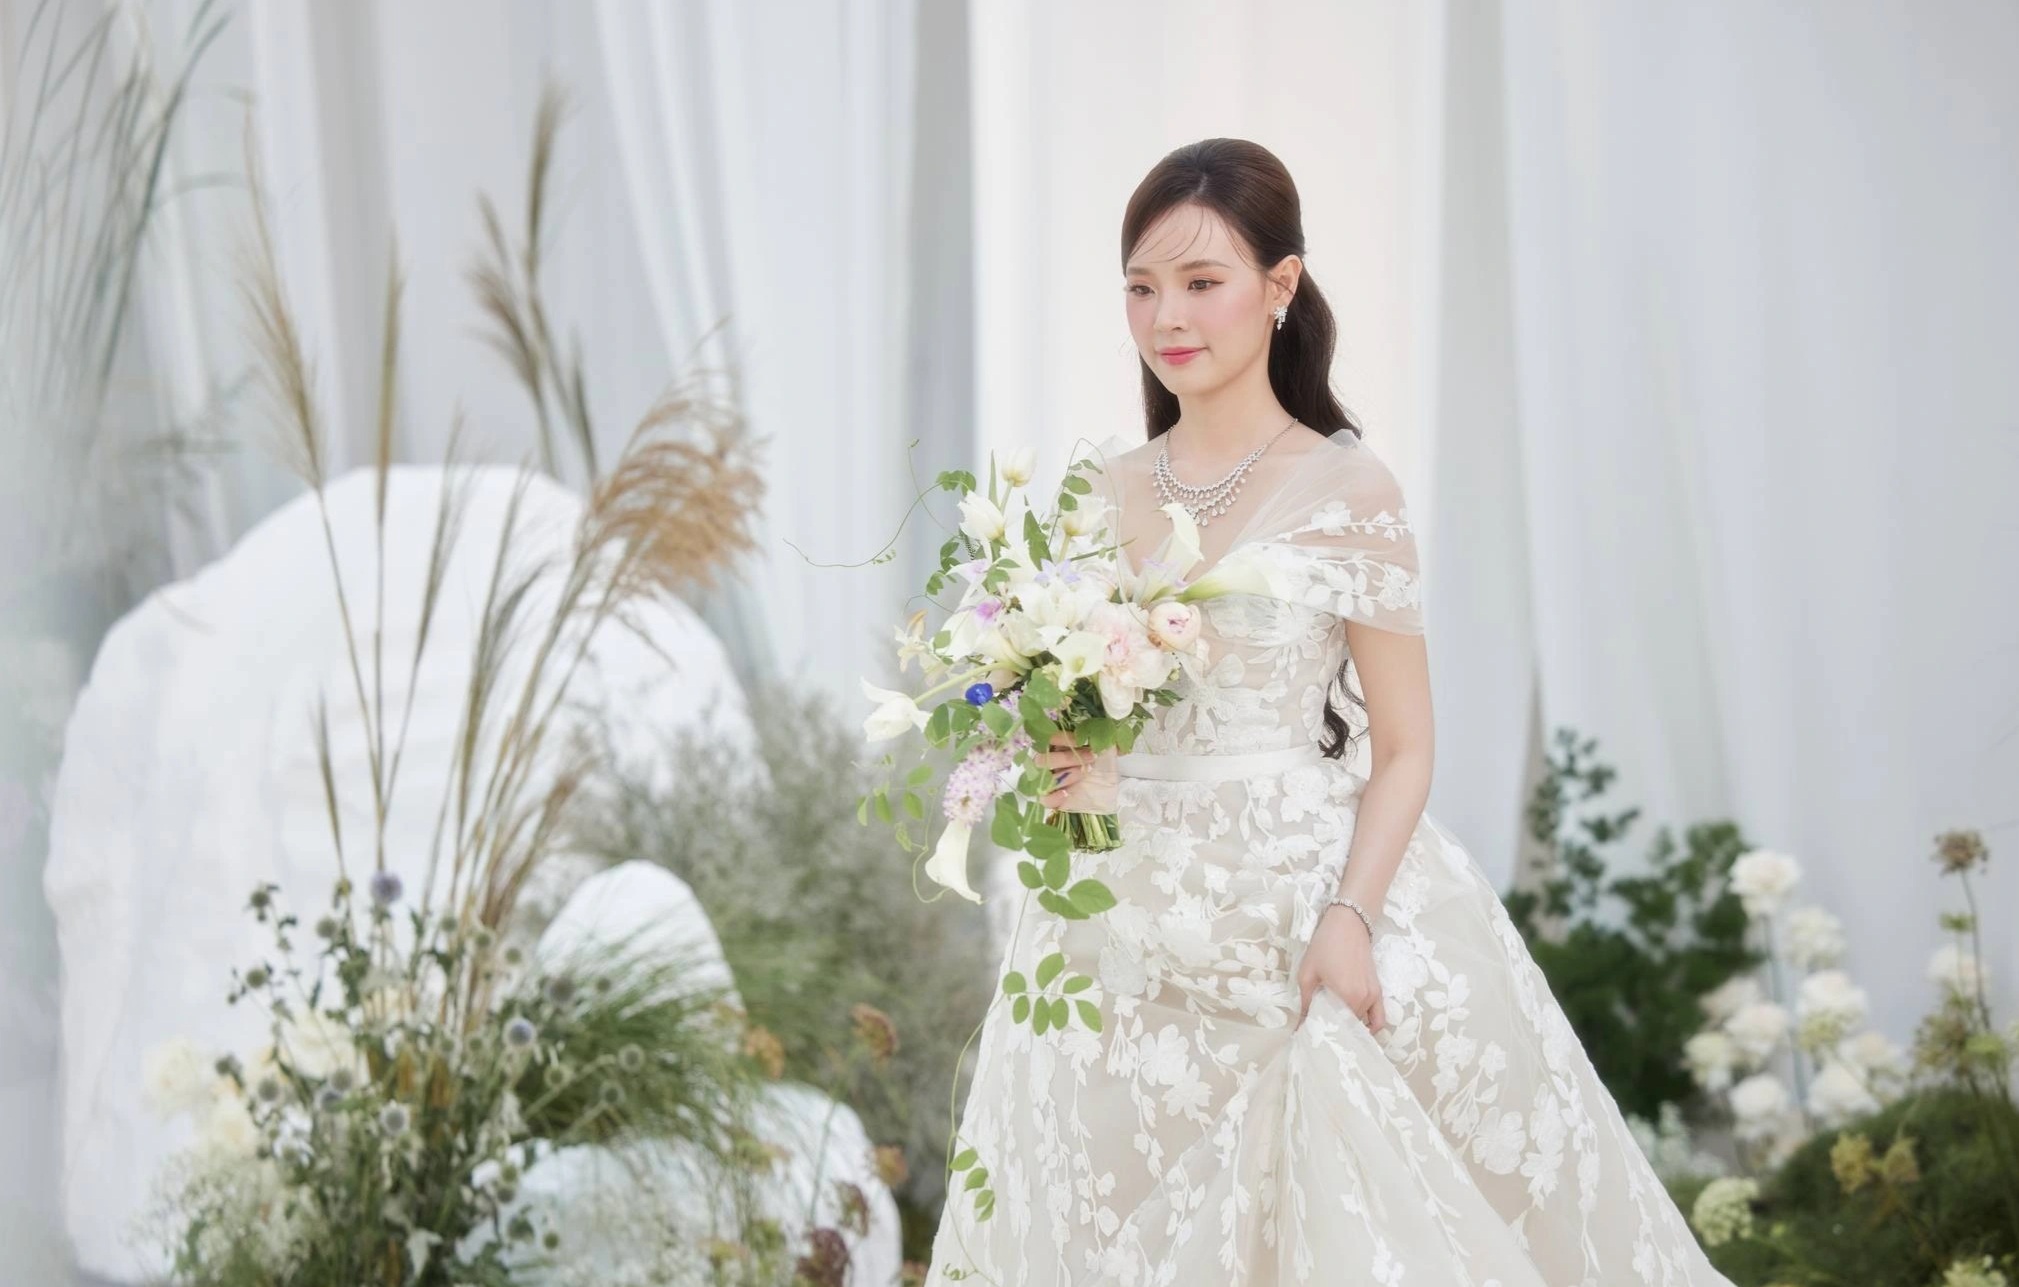 Midu diện 4 chiếc váy độc đáo, trị giá hàng tỷ đồng trong đám cưới - 1